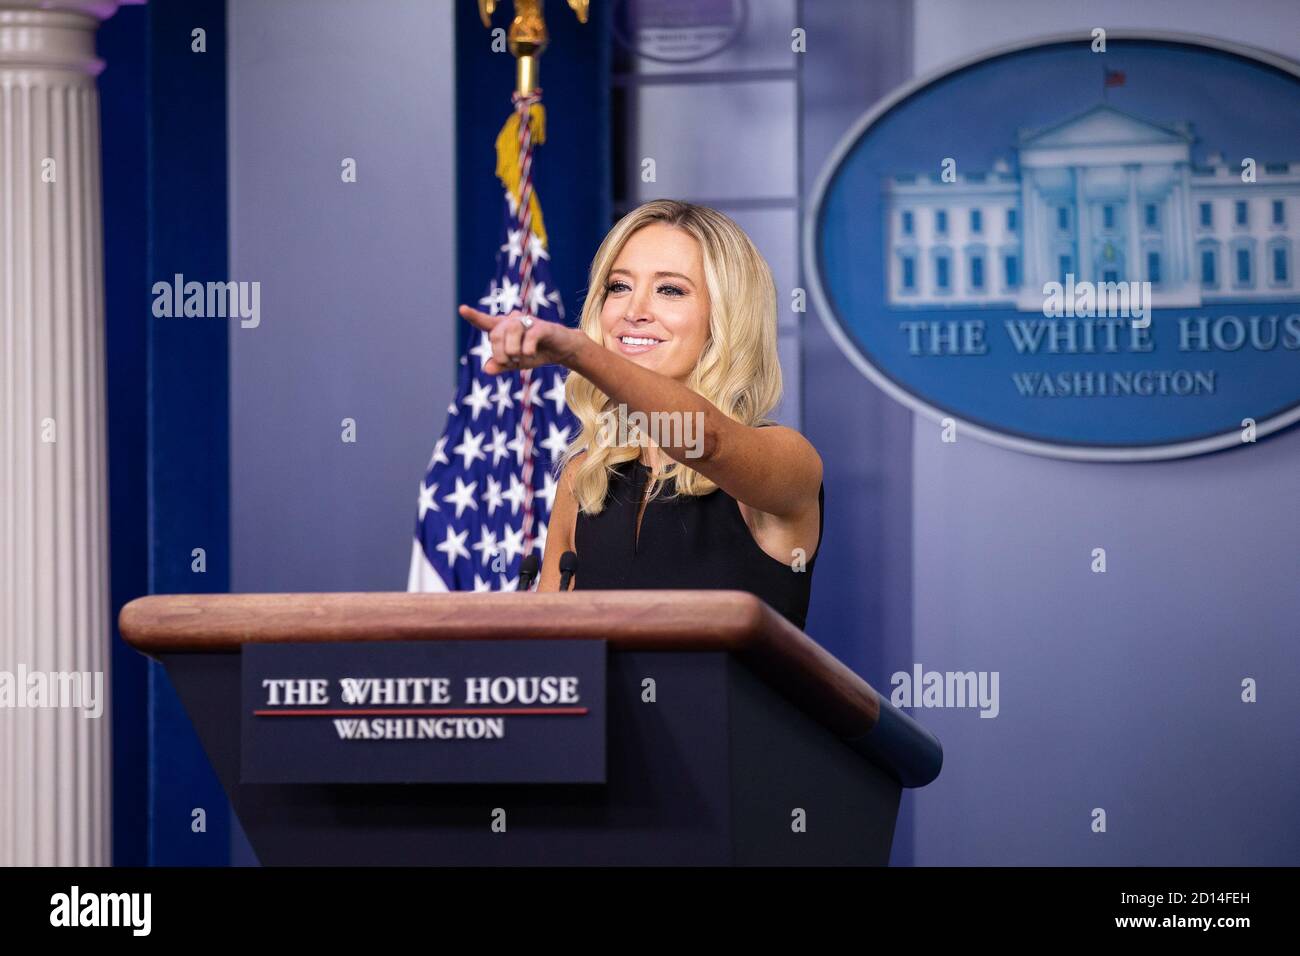 White House Stampa Briefing. Il segretario alla stampa Kayleigh McEnany tiene un briefing sulla stampa martedì 22 settembre 2020 nella Sala Stampa Briefing James S. Brady della Casa Bianca. Foto Stock